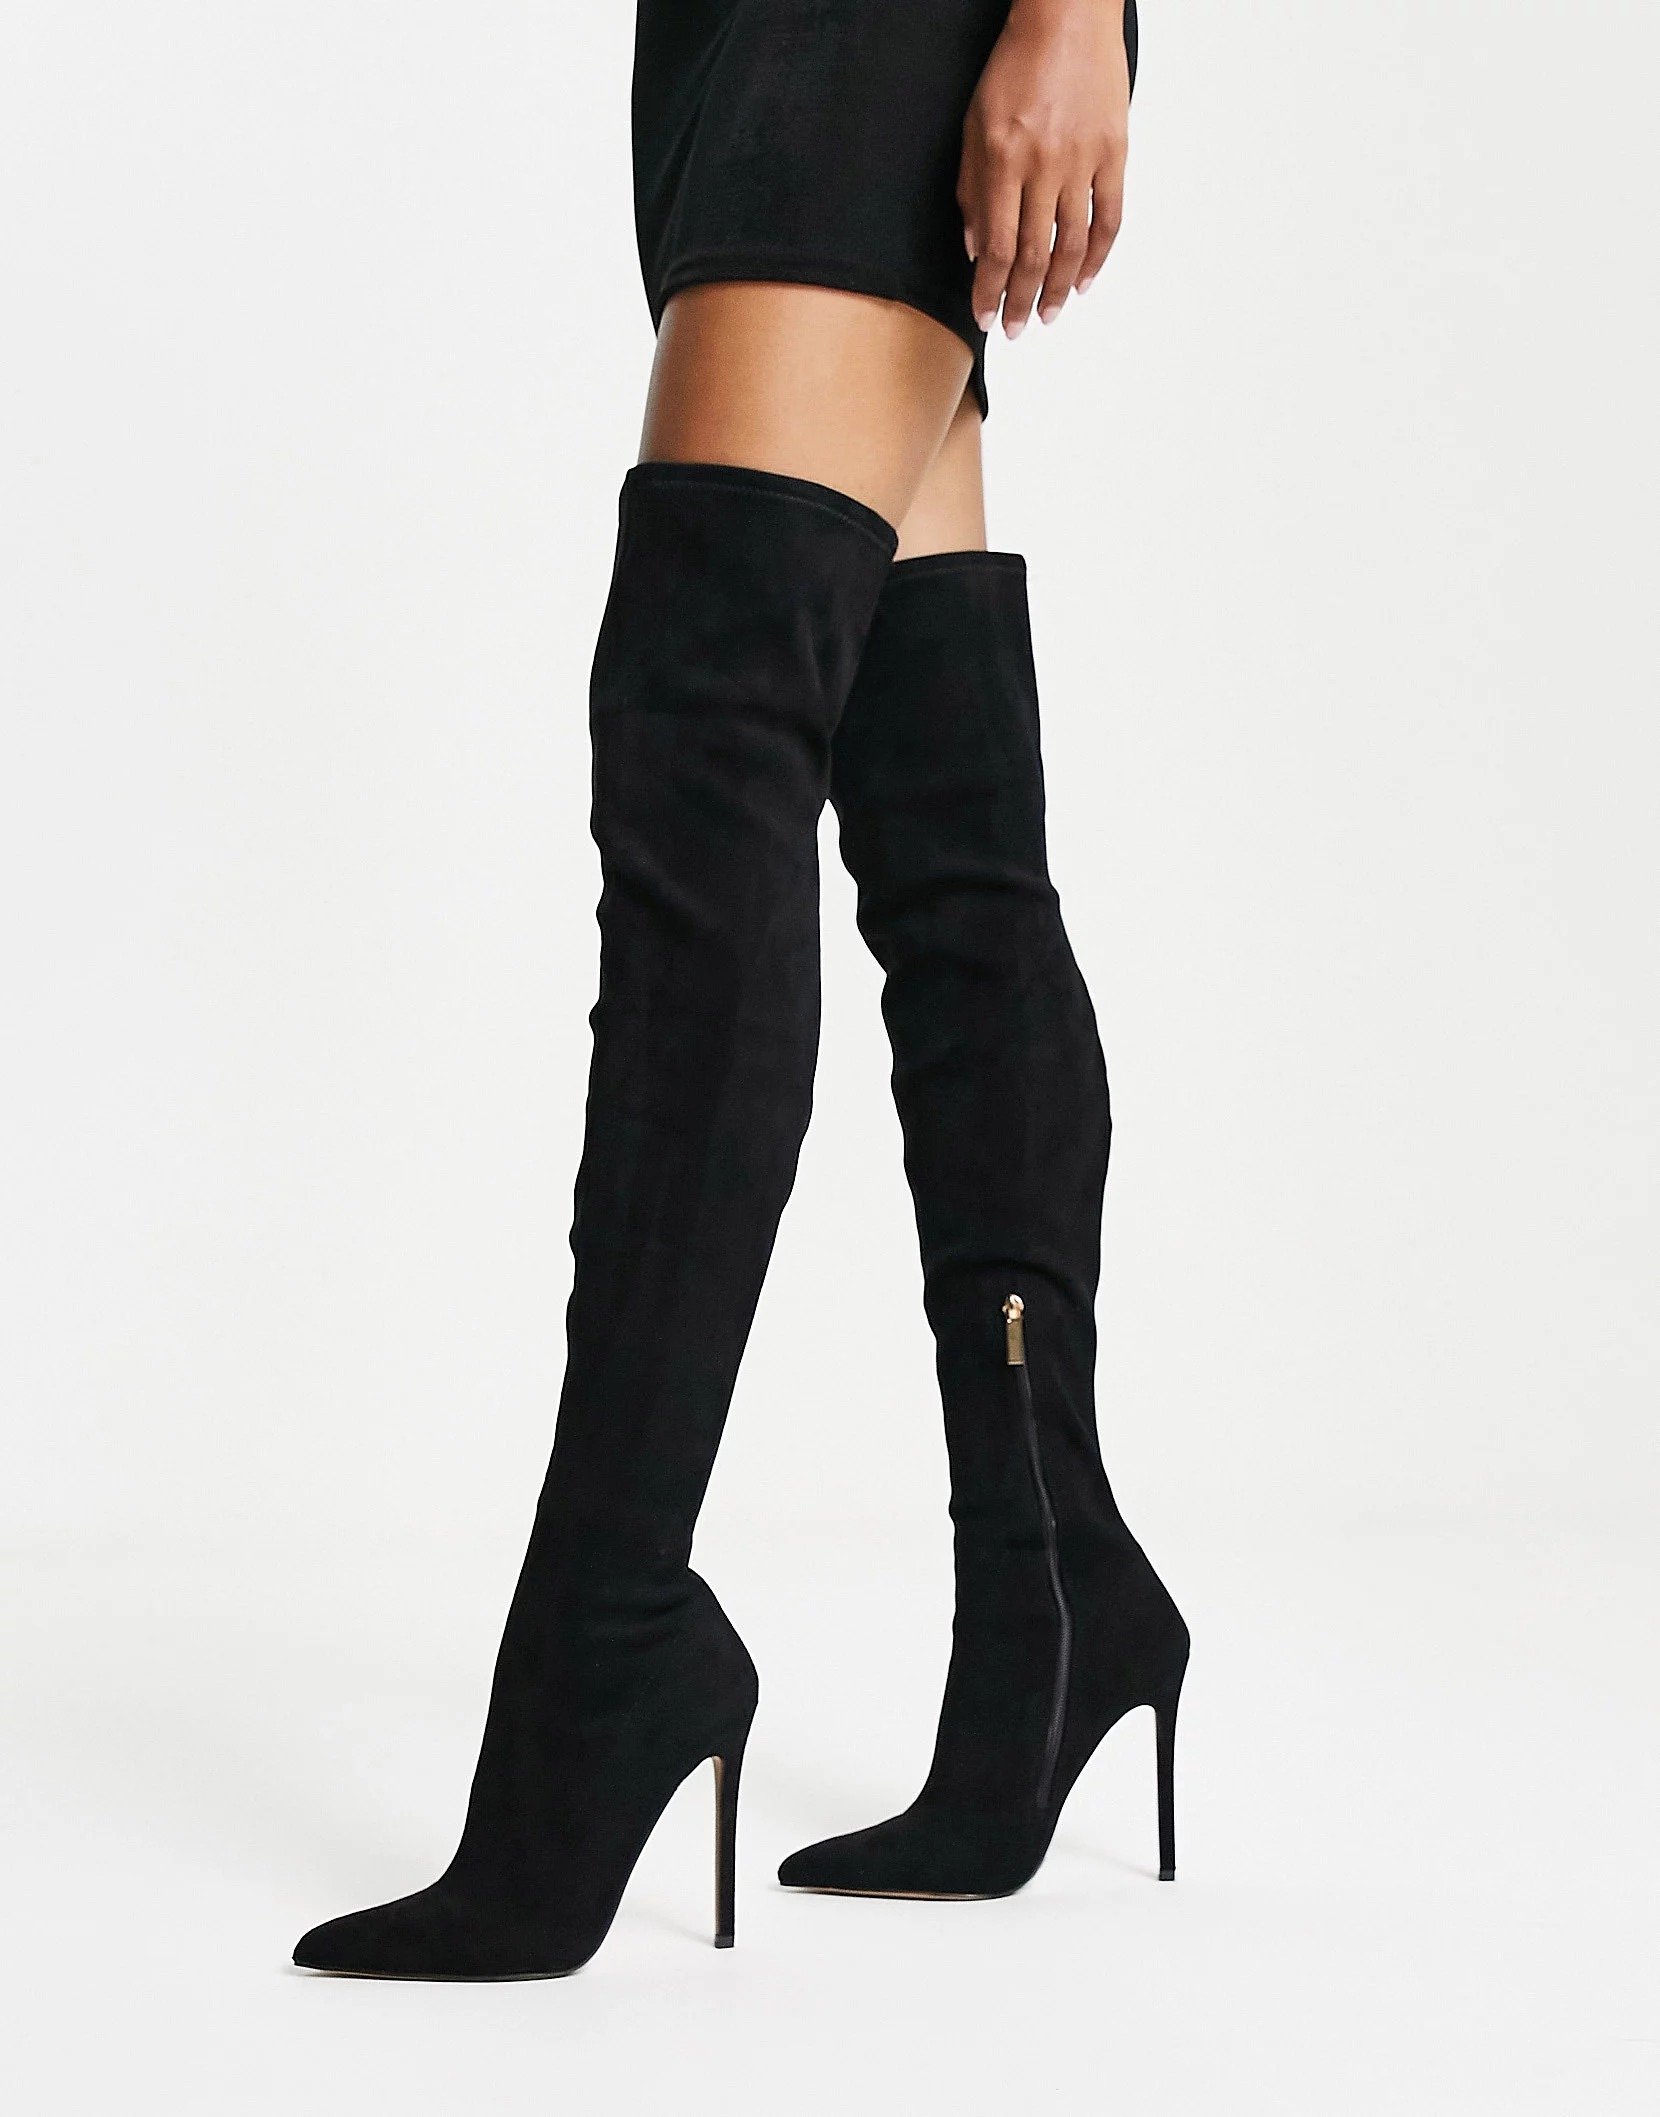 Сапоги Asos Design Koko Heeled Over The Knee, черный сапоги asos design knee high platform heeled faux leather черный